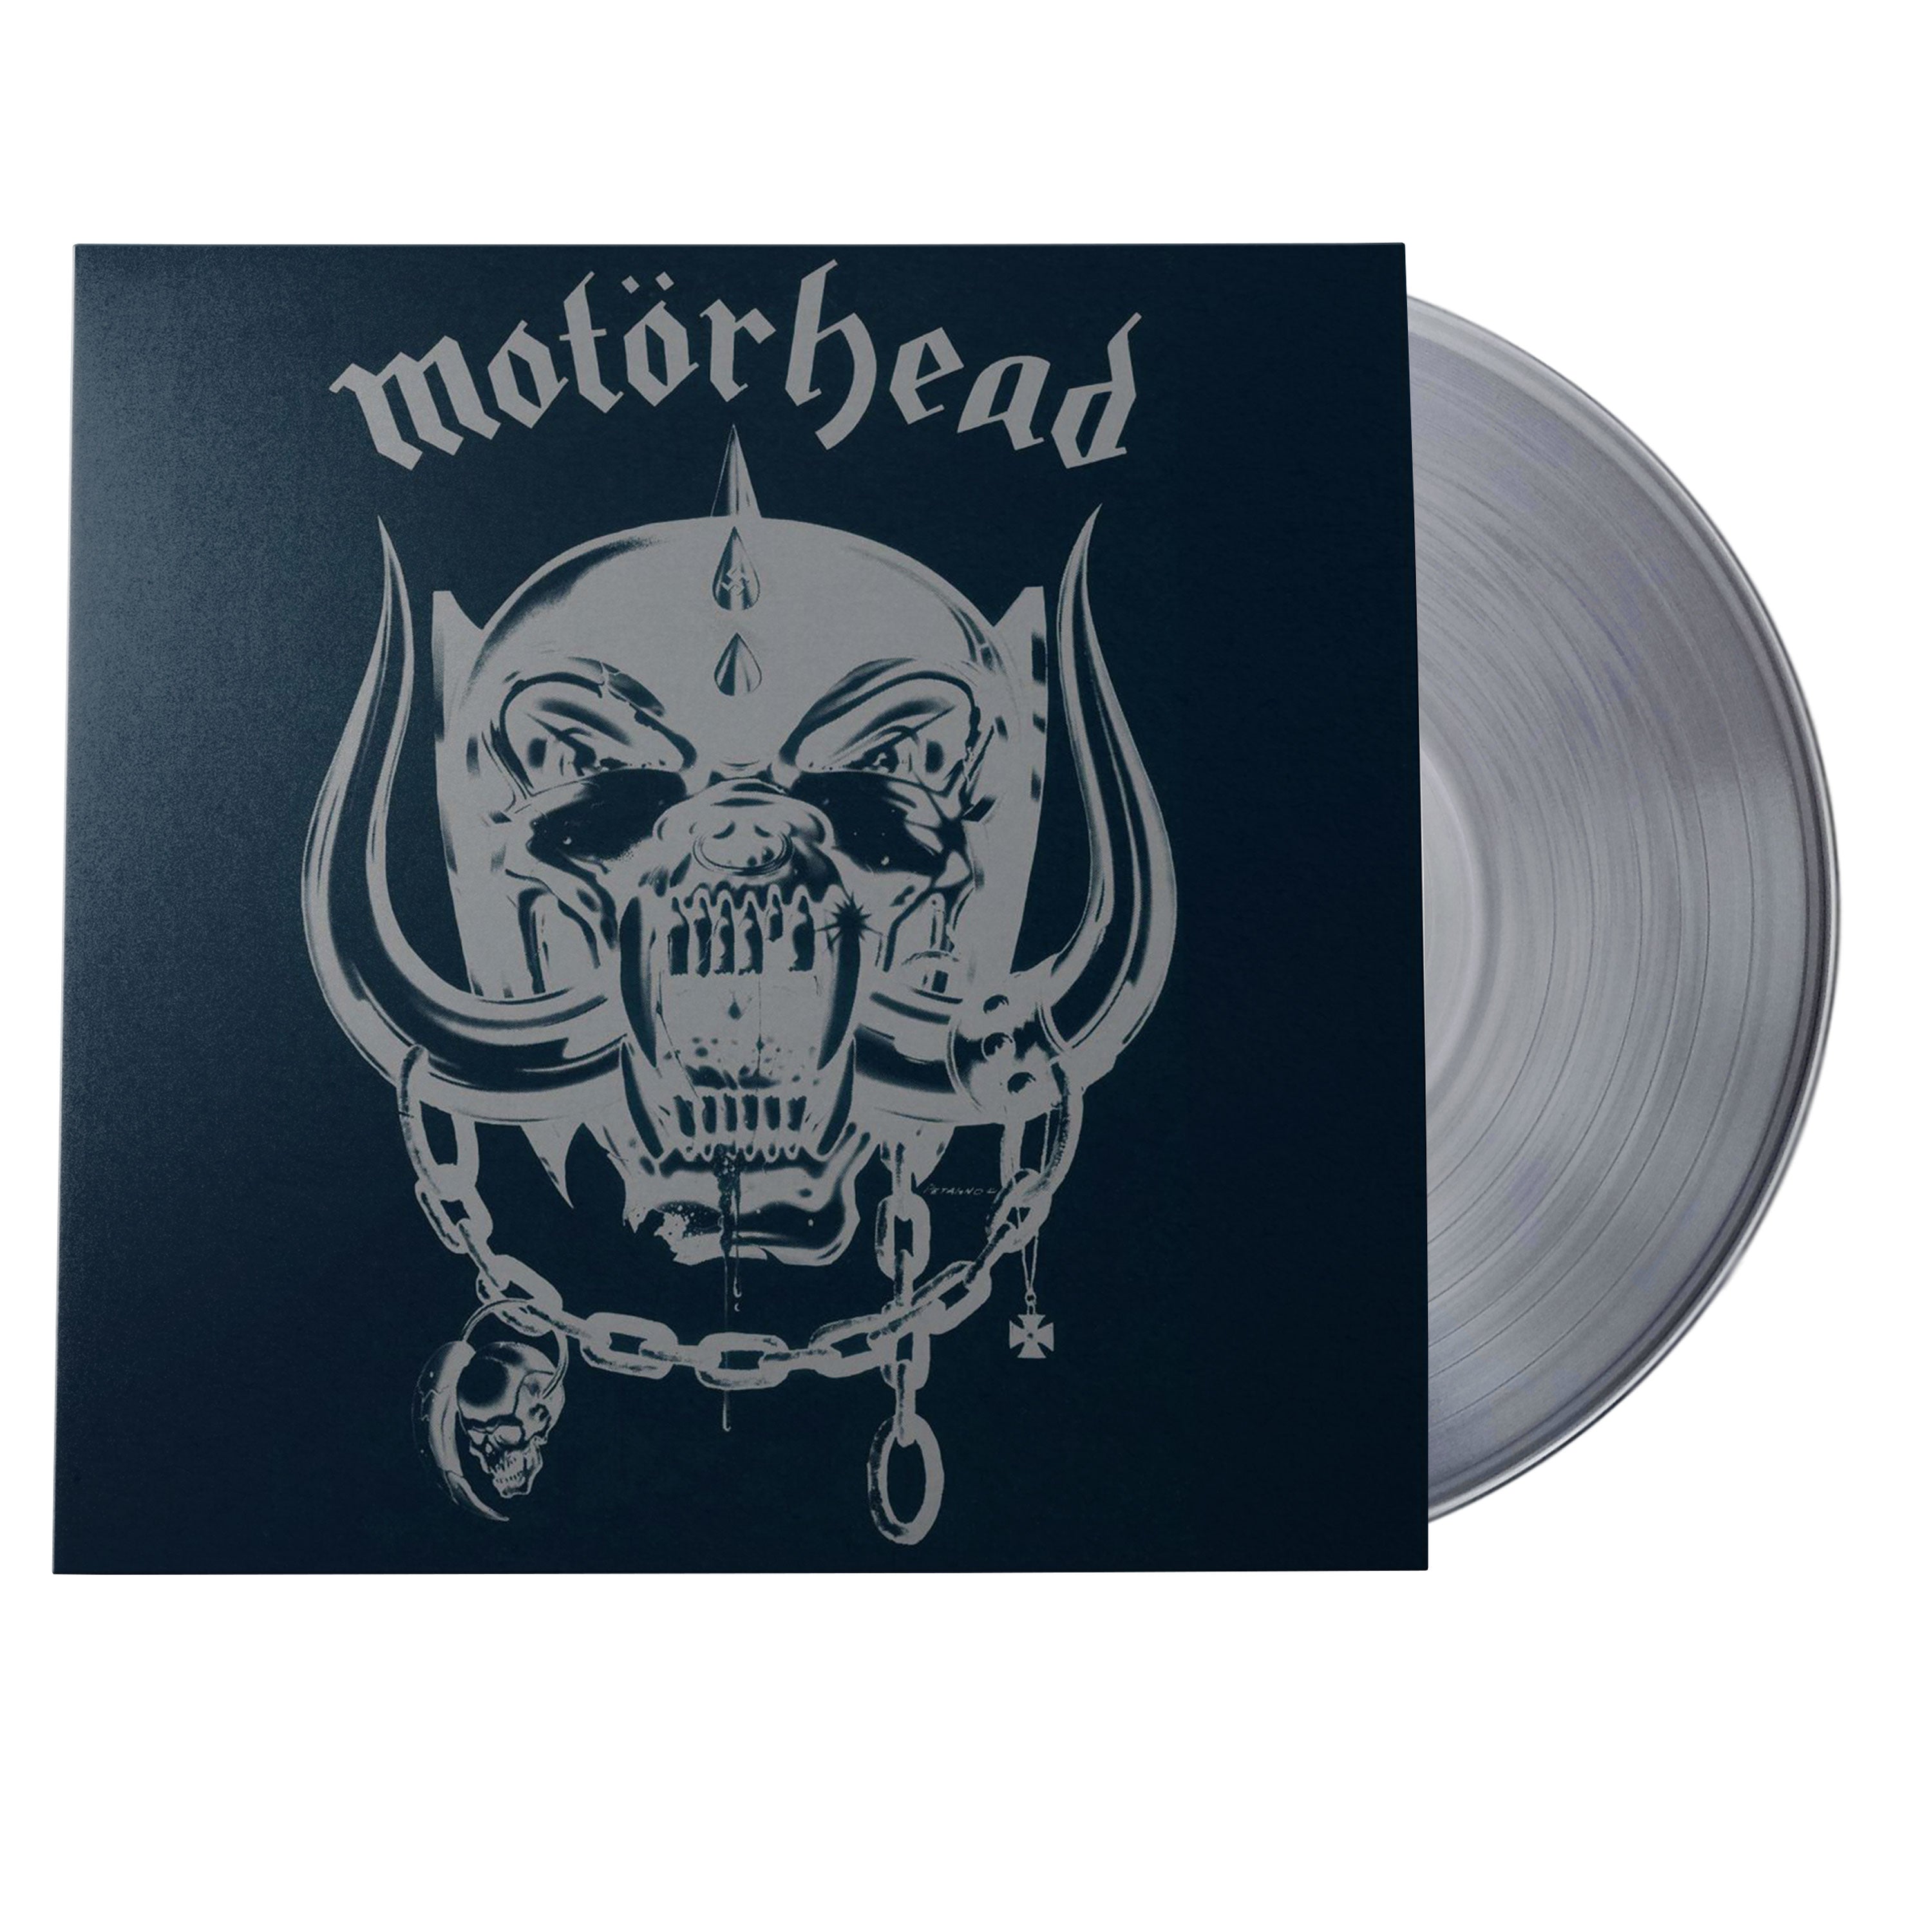 Motörhead Motörhead Vinyl